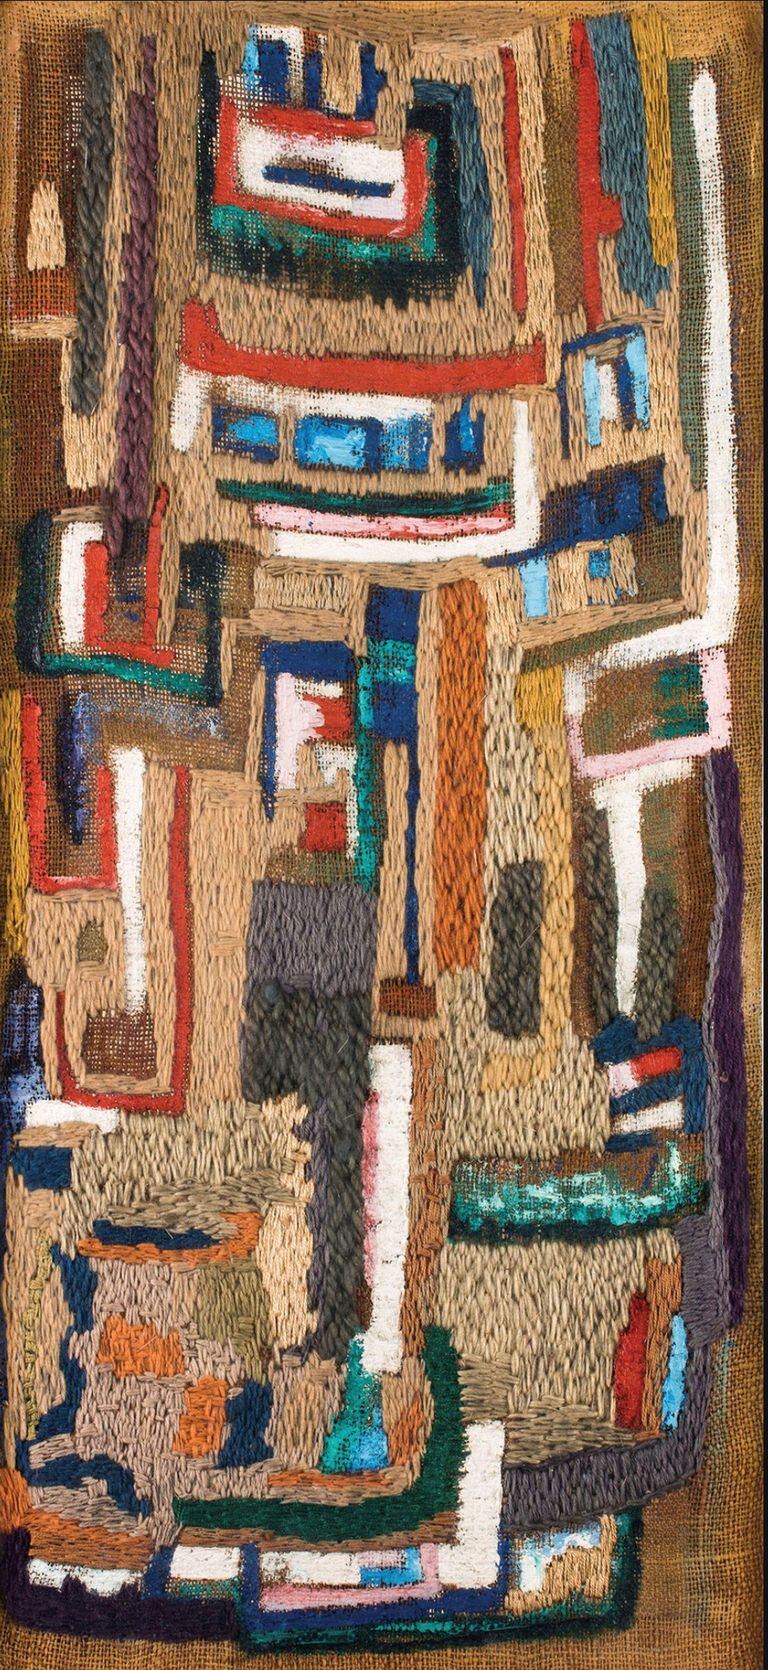 Tapiz (c. 1958), pieza textil de Yente comprada por el Malba